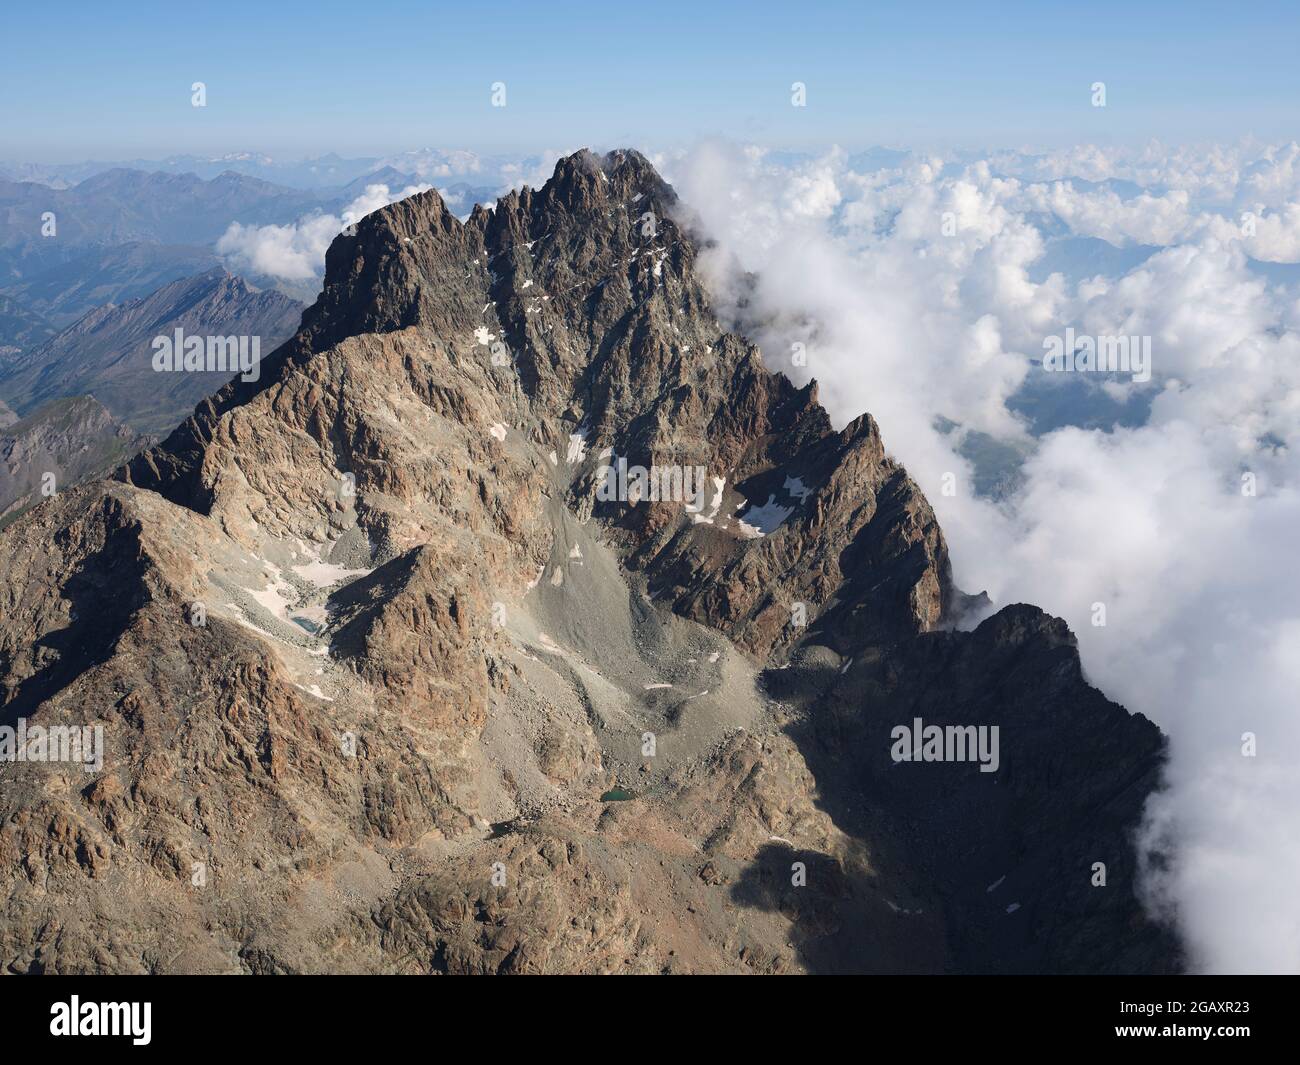 VISTA AÉREA. Cara de roca escarpada del sur de Monte Viso (3841m) con nubes al este por encima de la llanura del Po. Provincia de Cuneo, Piamonte, Italia. Foto de stock